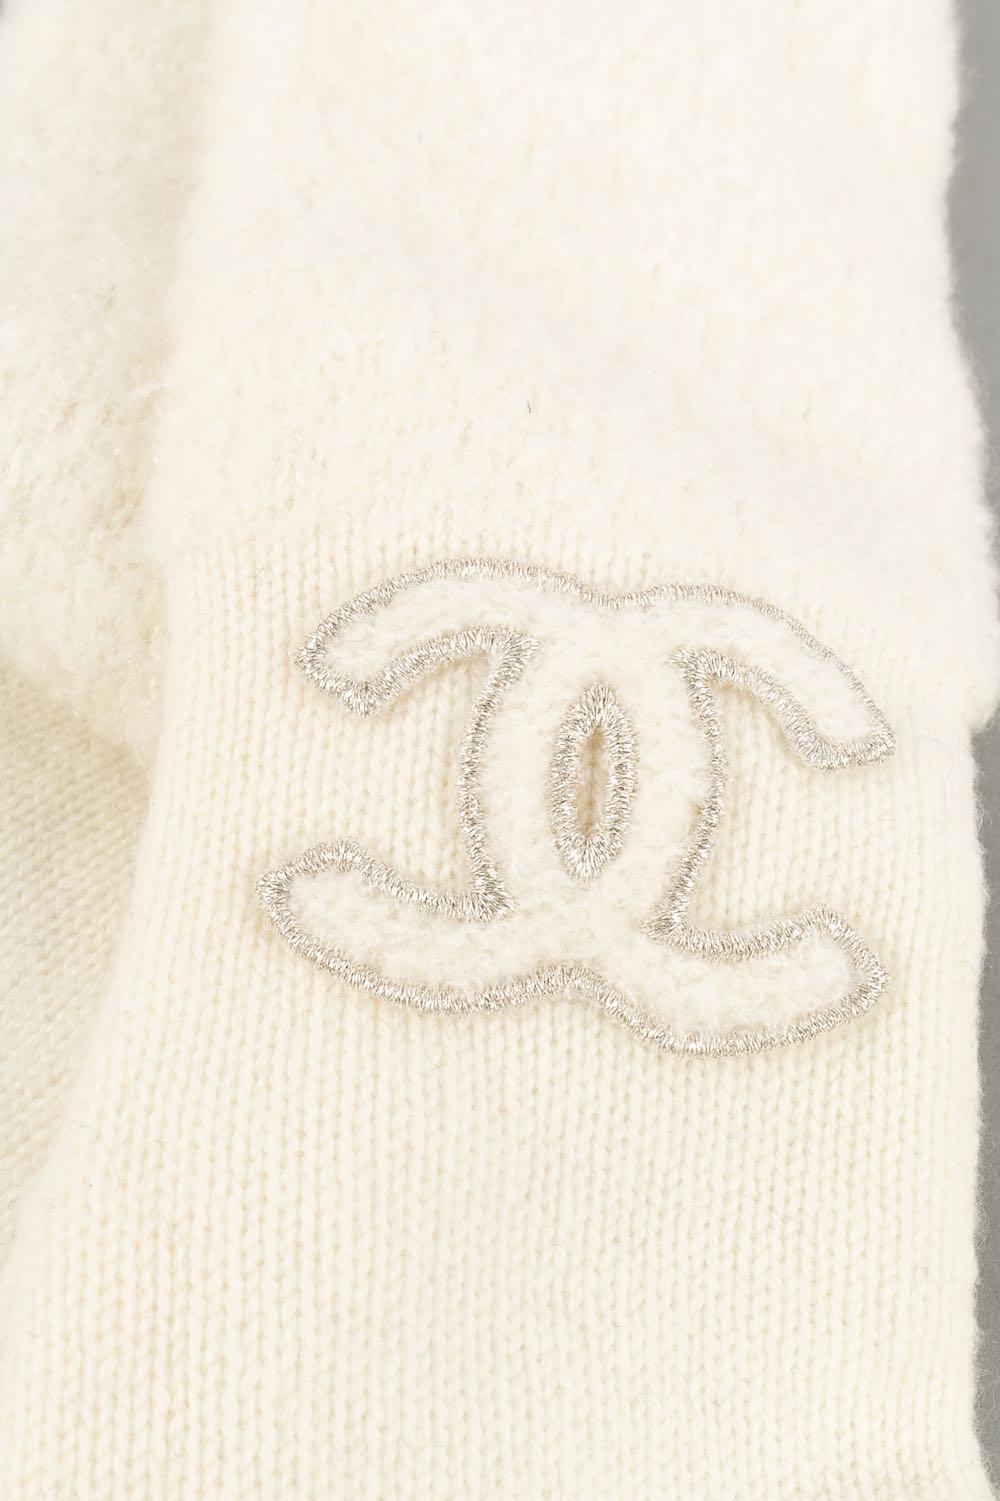 Chanel - (Made in Italy) Weiße Wollhandschuhe.

Zusätzliche Informationen:
Zustand: Sehr guter Zustand
Abmessungen: Höhe: 41 cm

Verkäufer-Referenz: ACC102